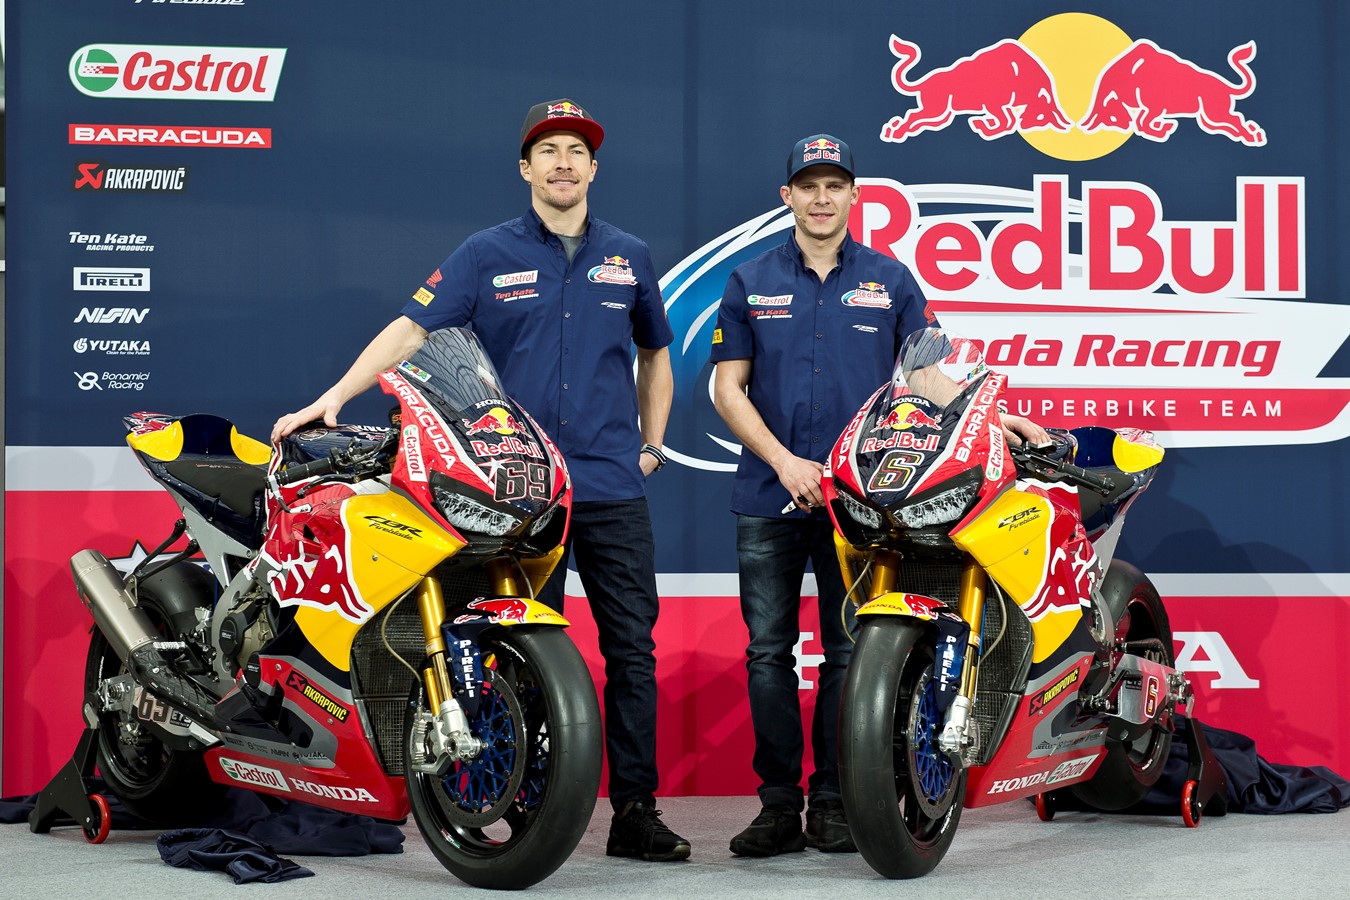 Red Bull Honda World Superbike Team launch